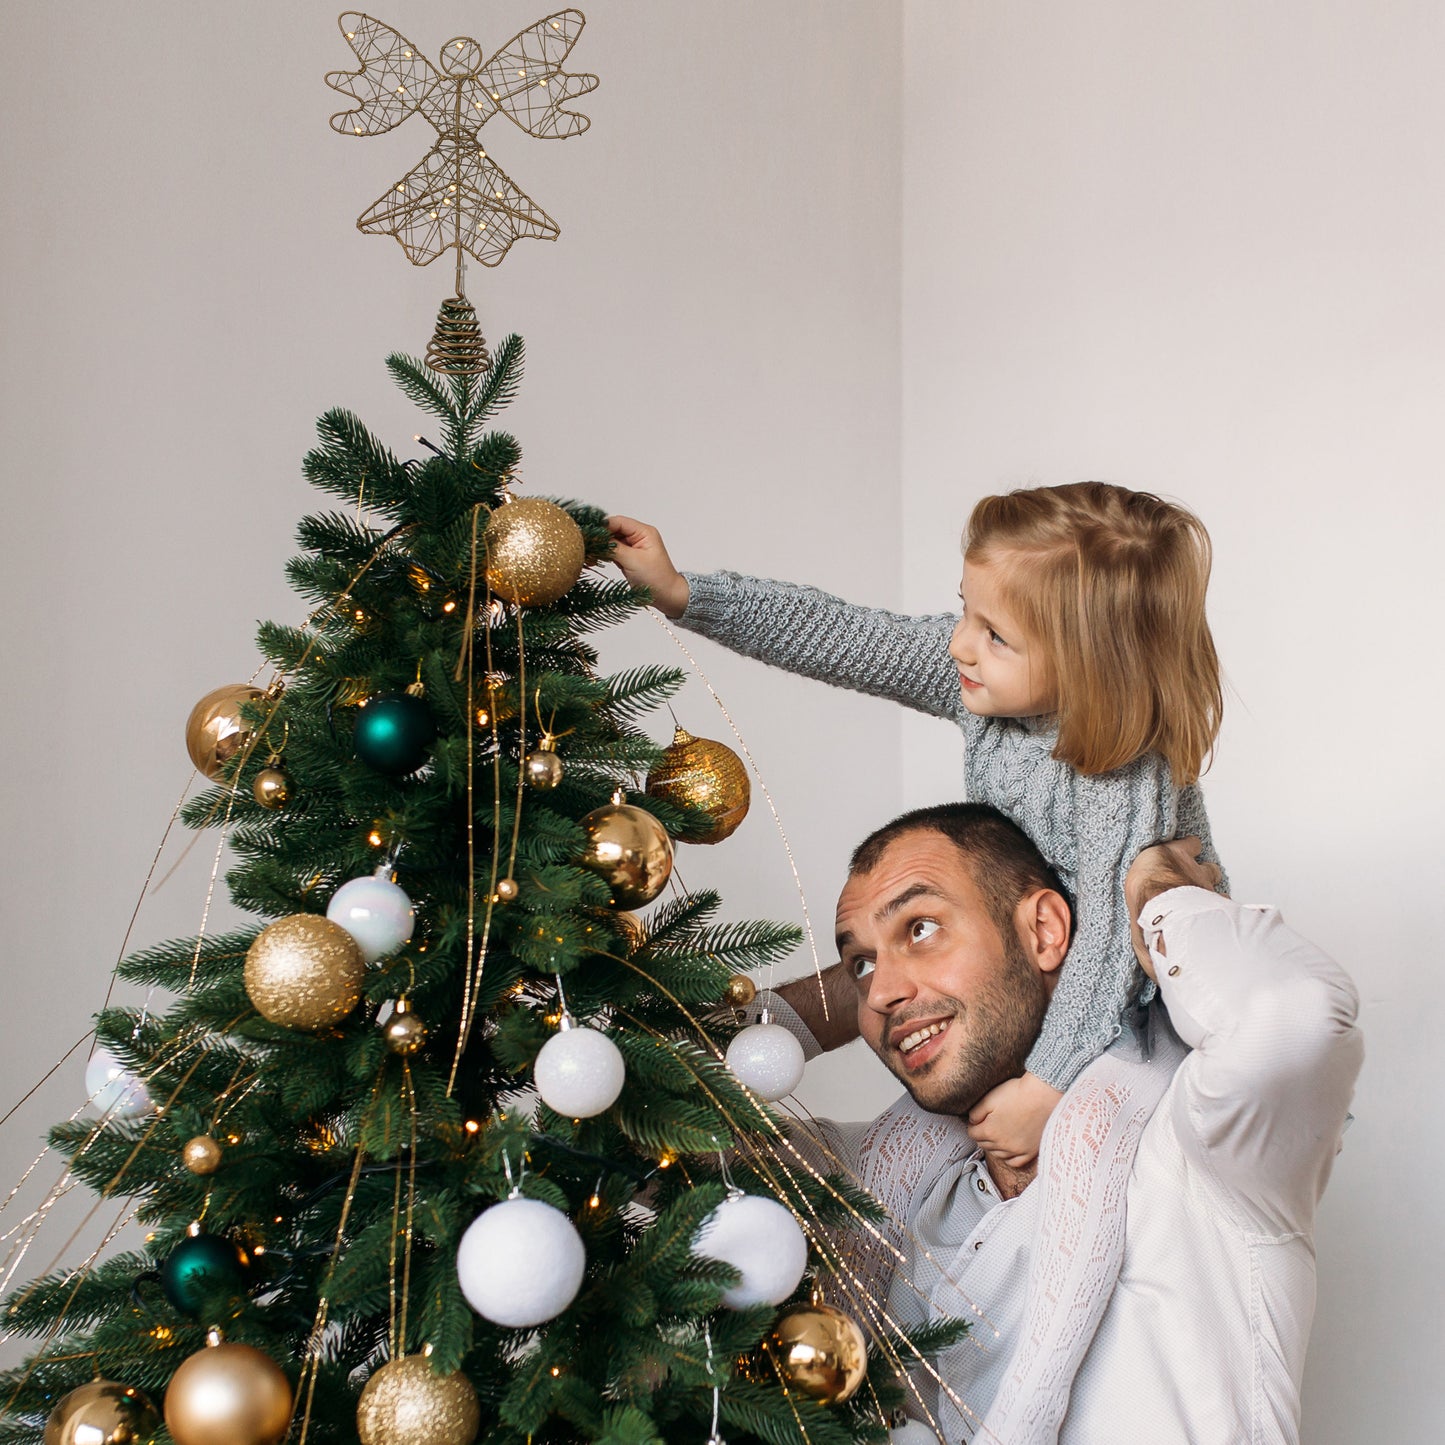 Christmas Tree Angel Topper - Elegant Ornament for Festive Trees